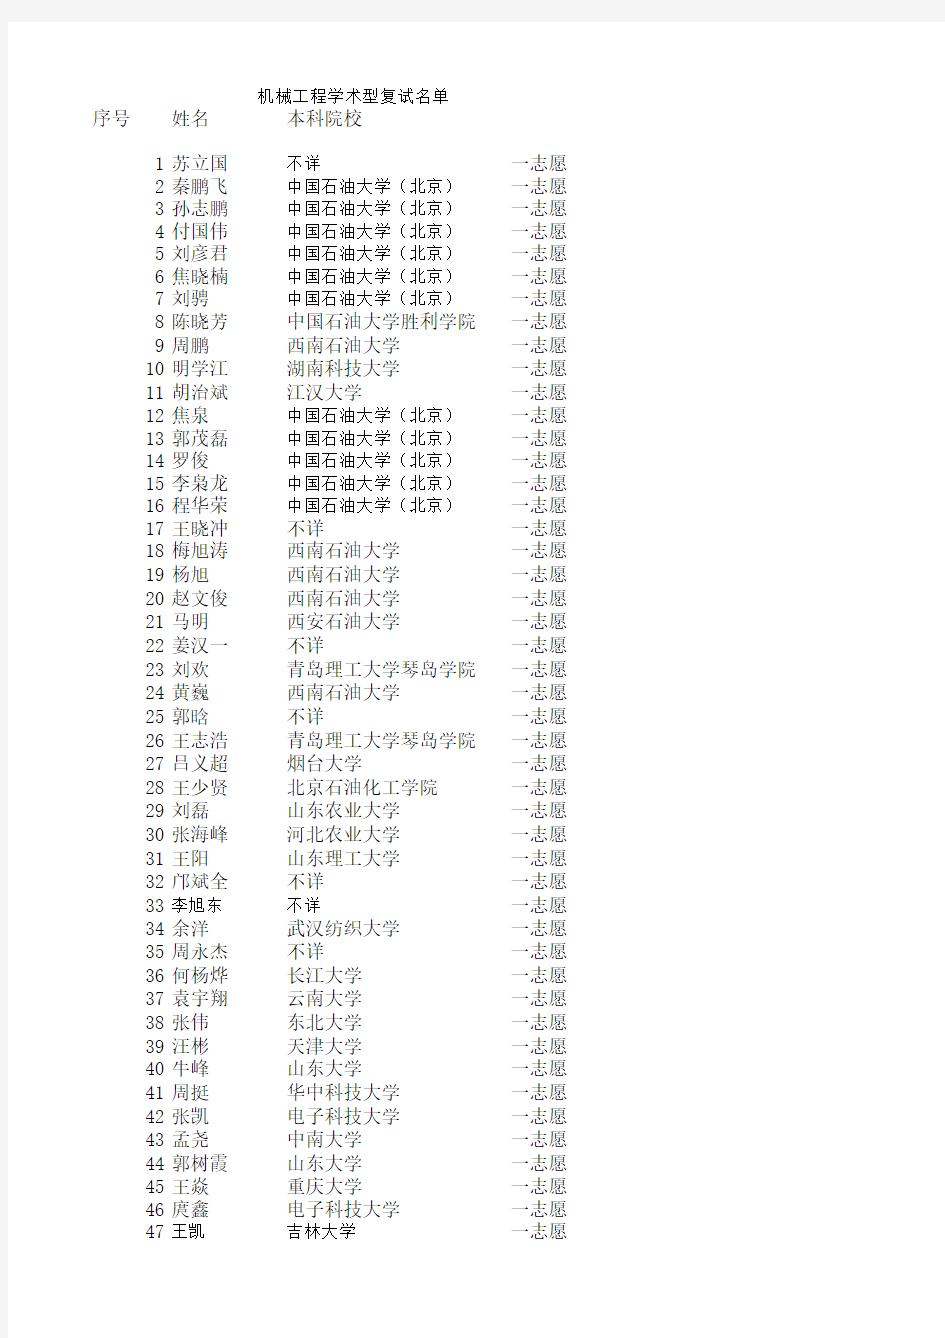 中国石油大学(beijing )2012年机械学院考研复试名单